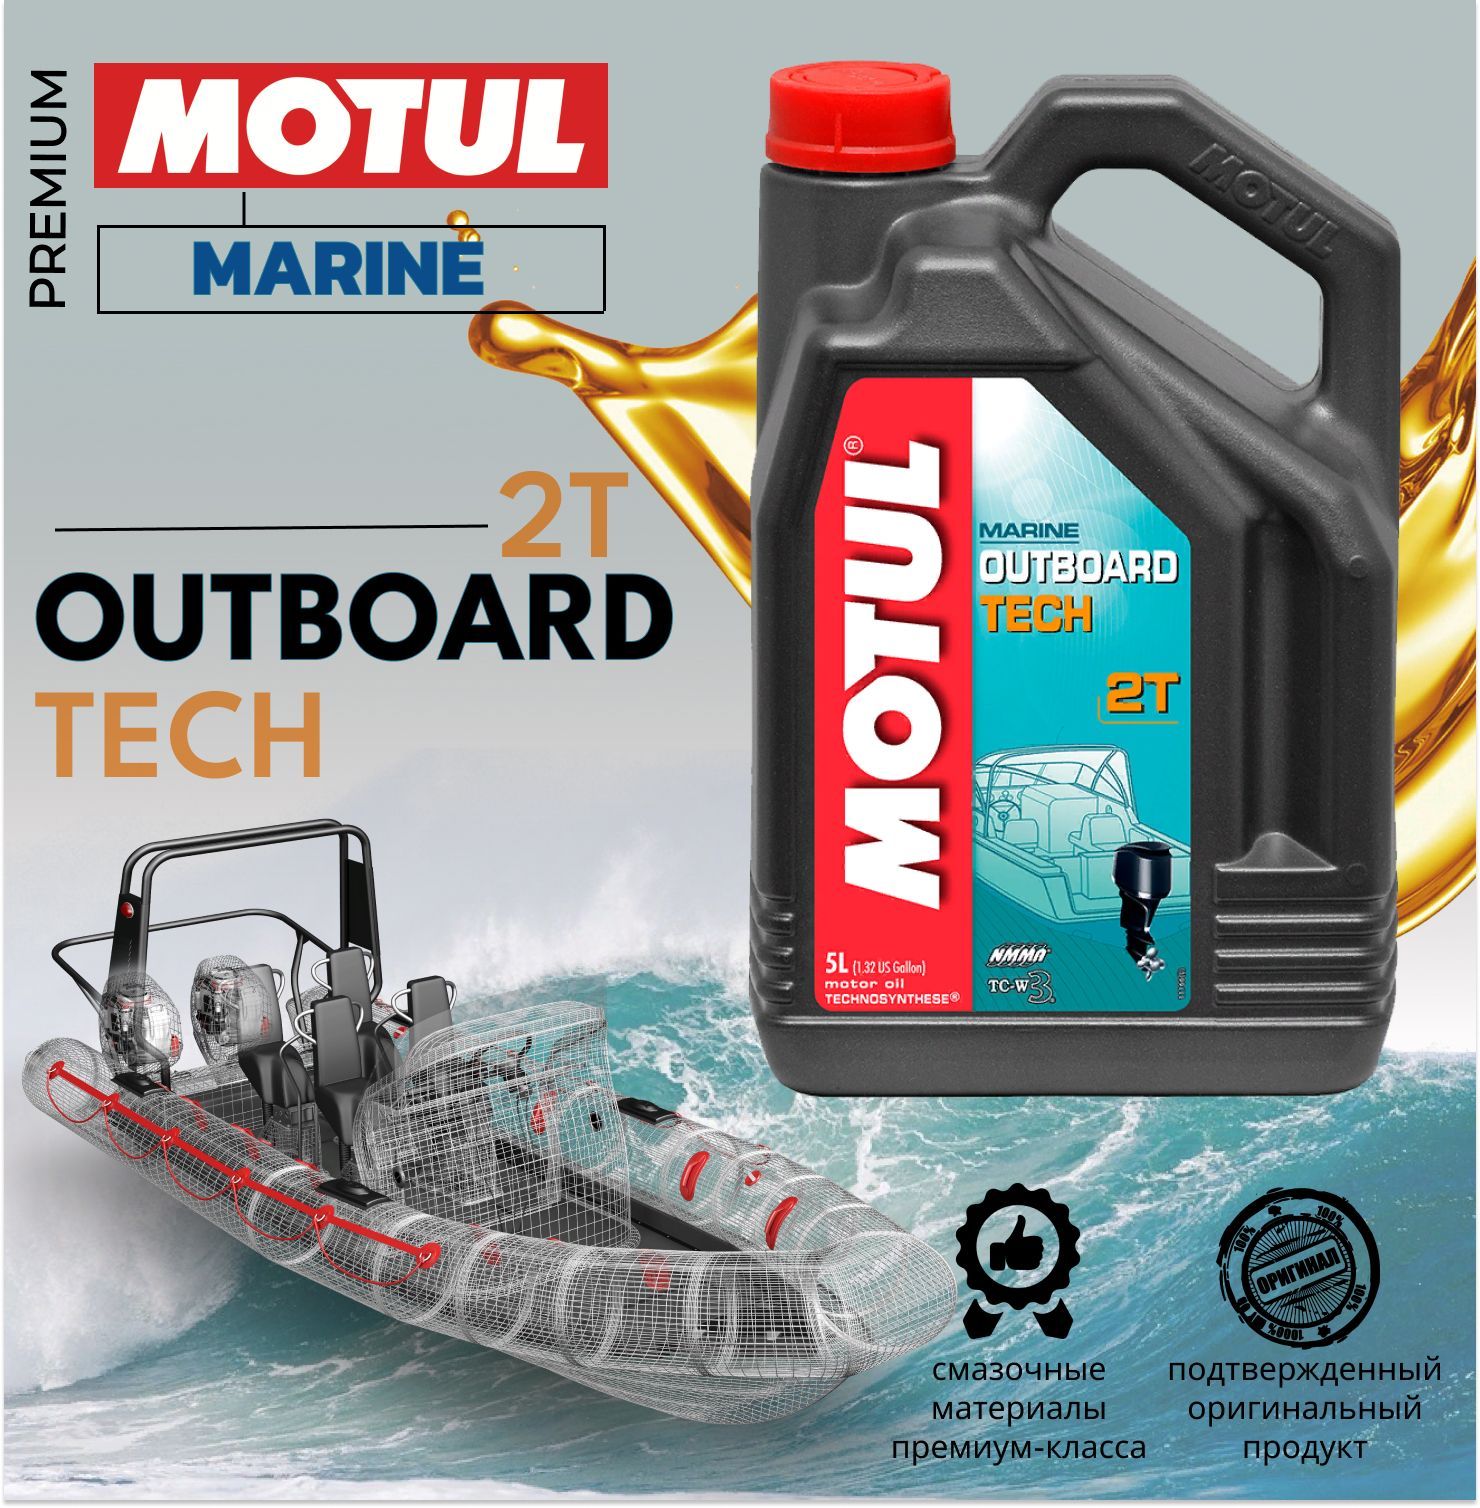 Motul outboard tech 2t. Motul outboard Tech 2t 5л.